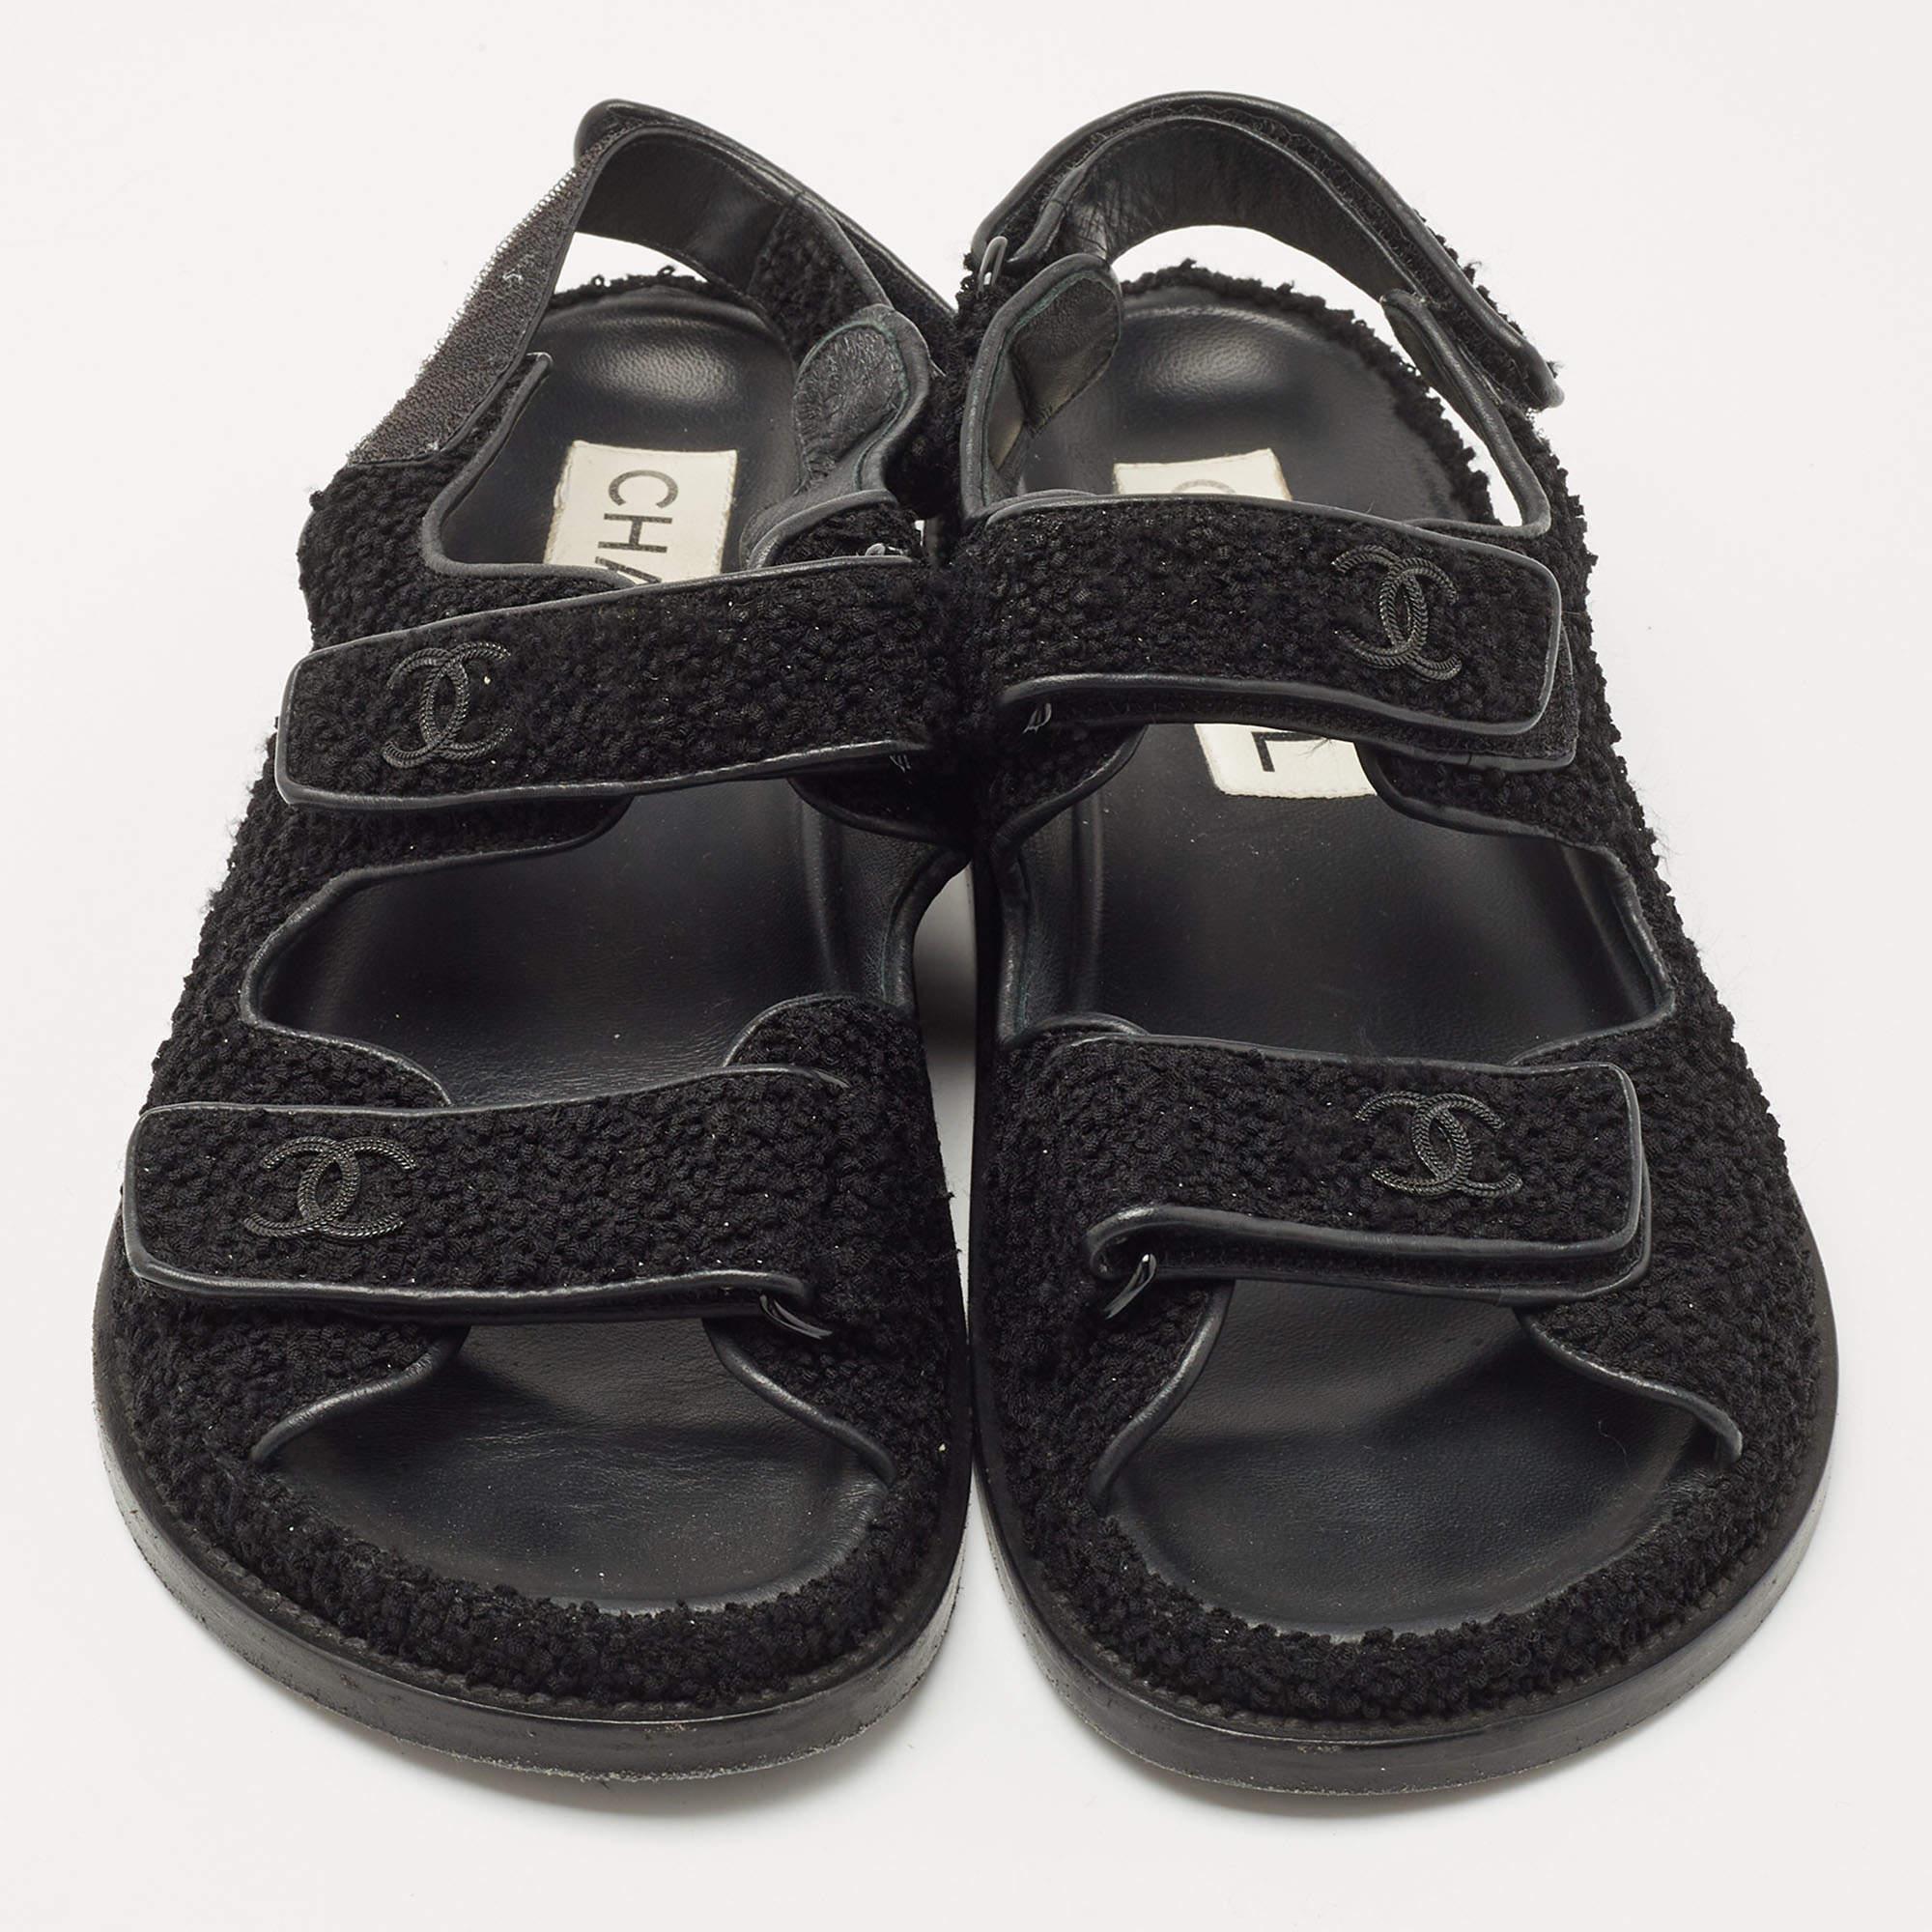 Chanel Black Dad Sandals - 4 For Sale on 1stDibs  chanel dad sandals  burgundy, chanel dad sandals price, chanel sandals black price